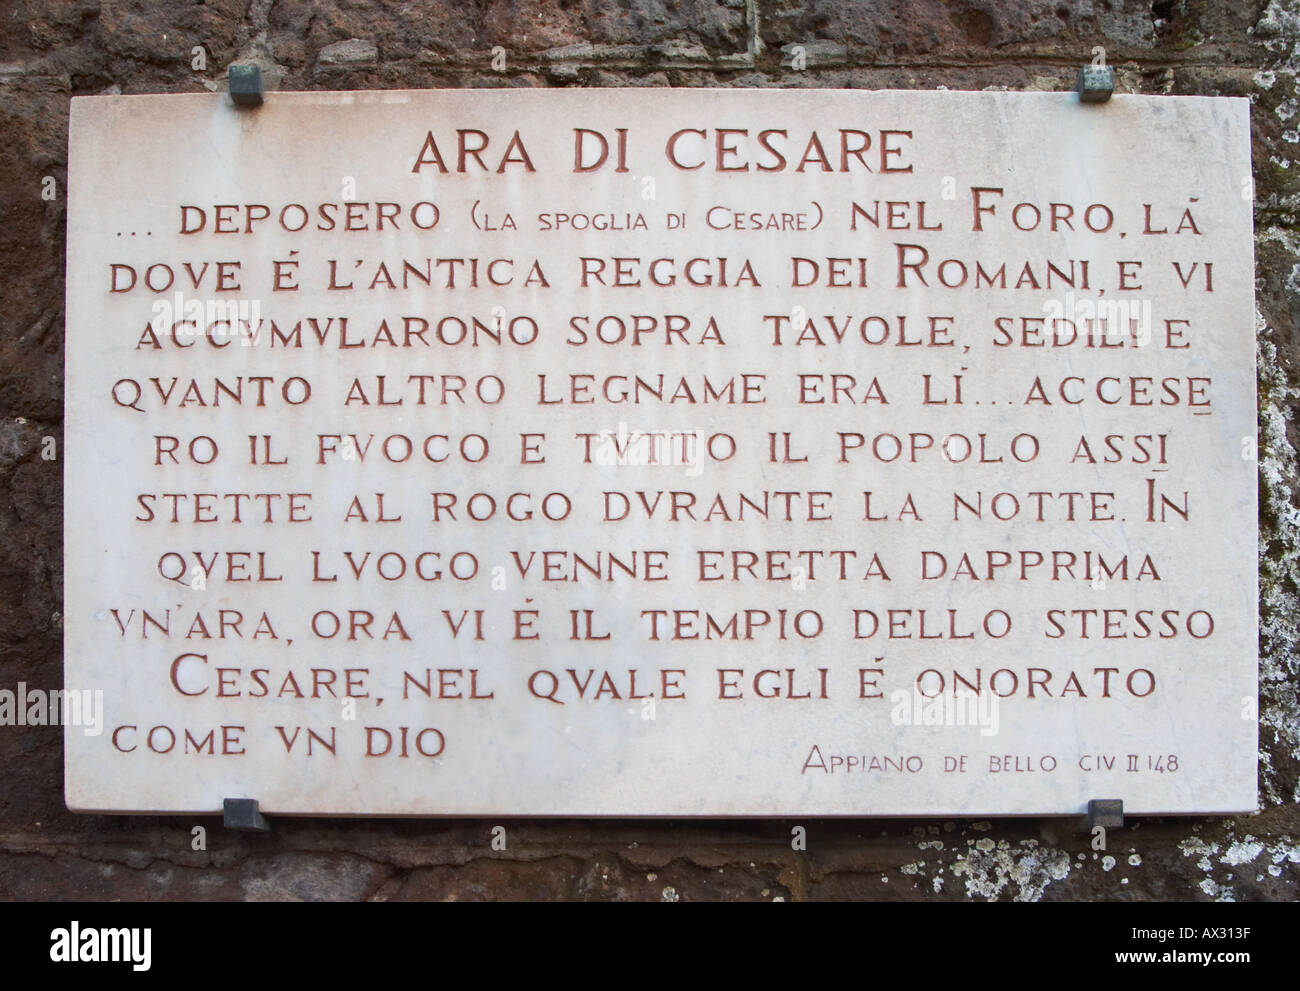 Plaque for the Ara di Cesare Foro Romano The Roman Forum Rome Stock Photo -  Alamy